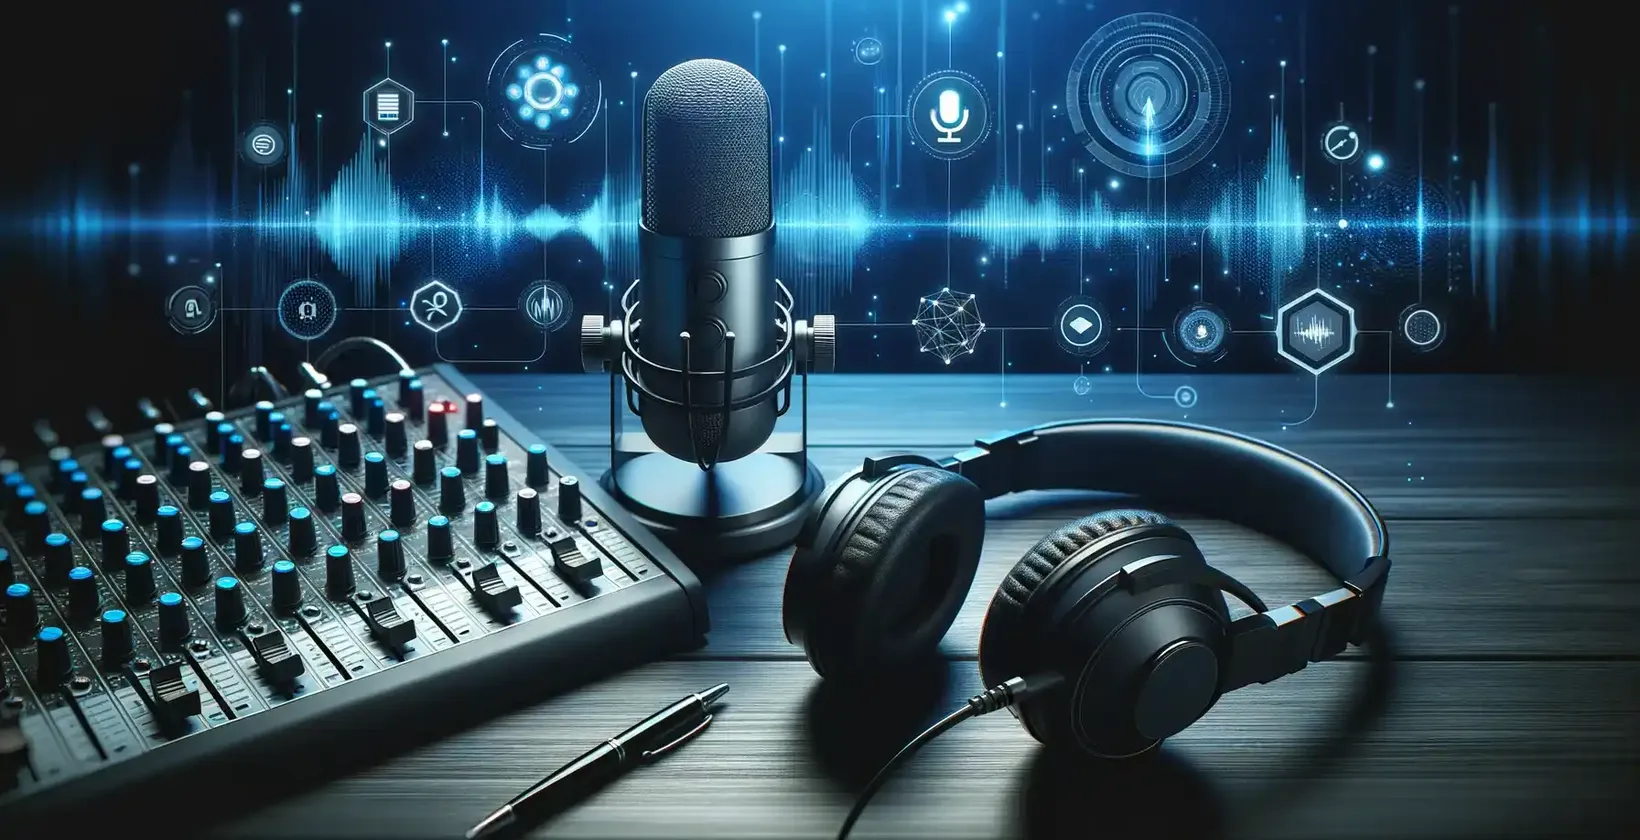 Podcasty są dostępne ze sprzętem studyjnym, w tym mikrofonem, słuchawkami i ekranem wyświetlającym fale dźwiękowe.